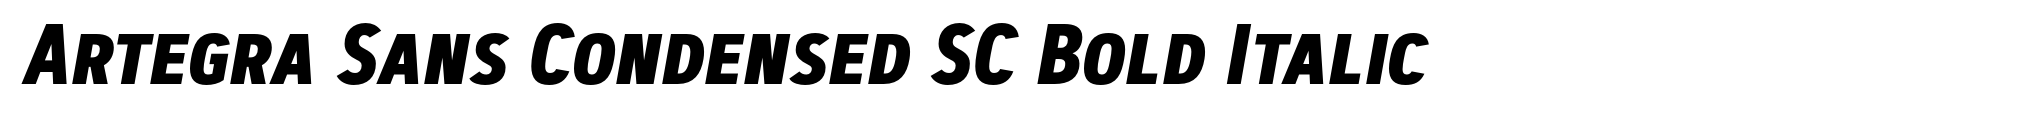 Artegra Sans Condensed SC Bold Italic image